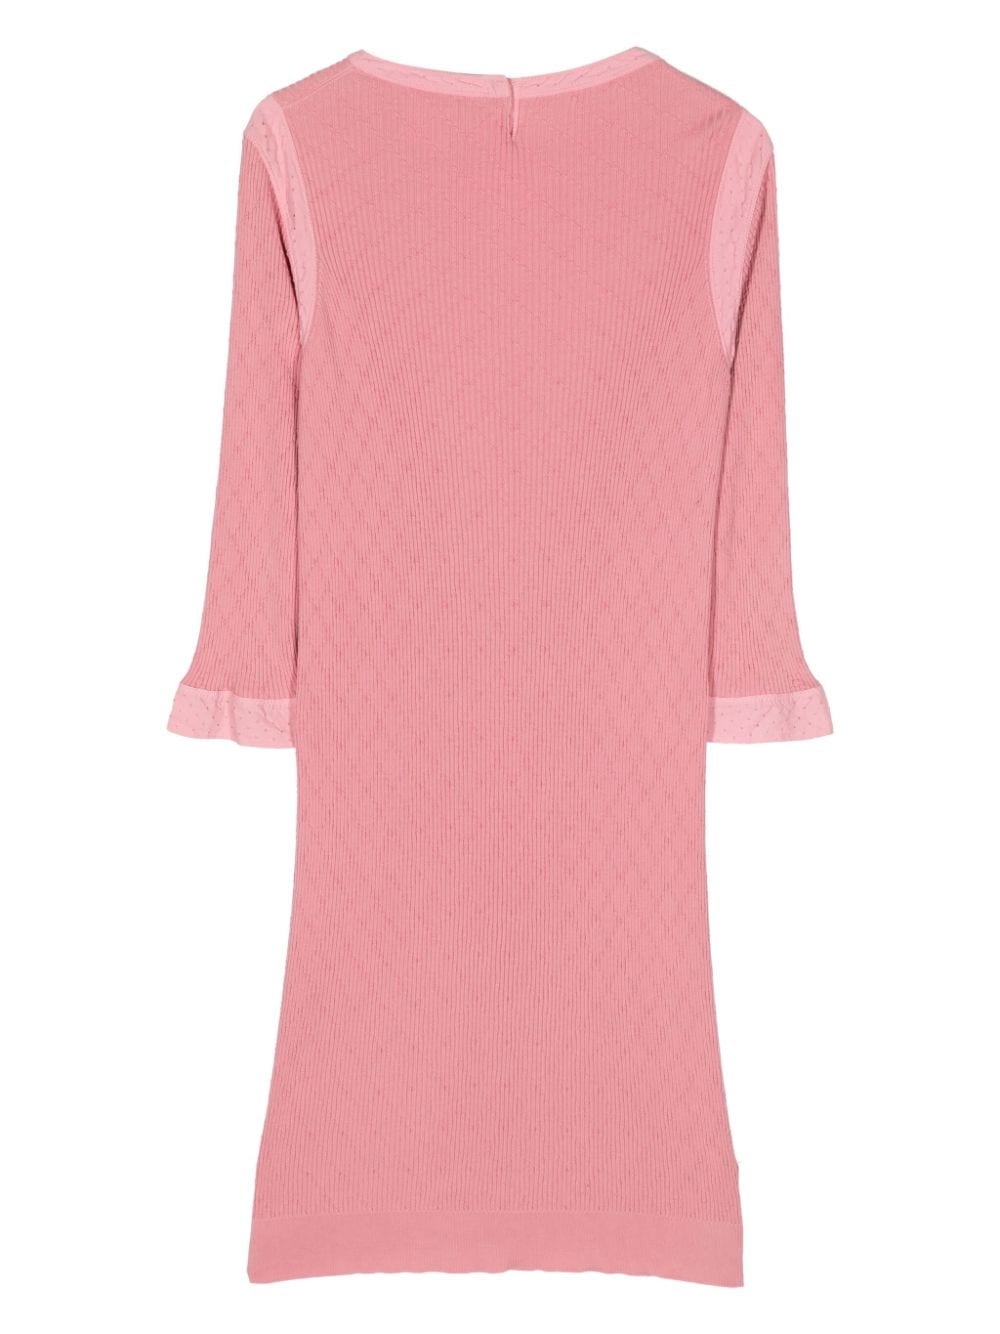 CHANEL Pre-Owned 2000s gebreide jurk - Roze